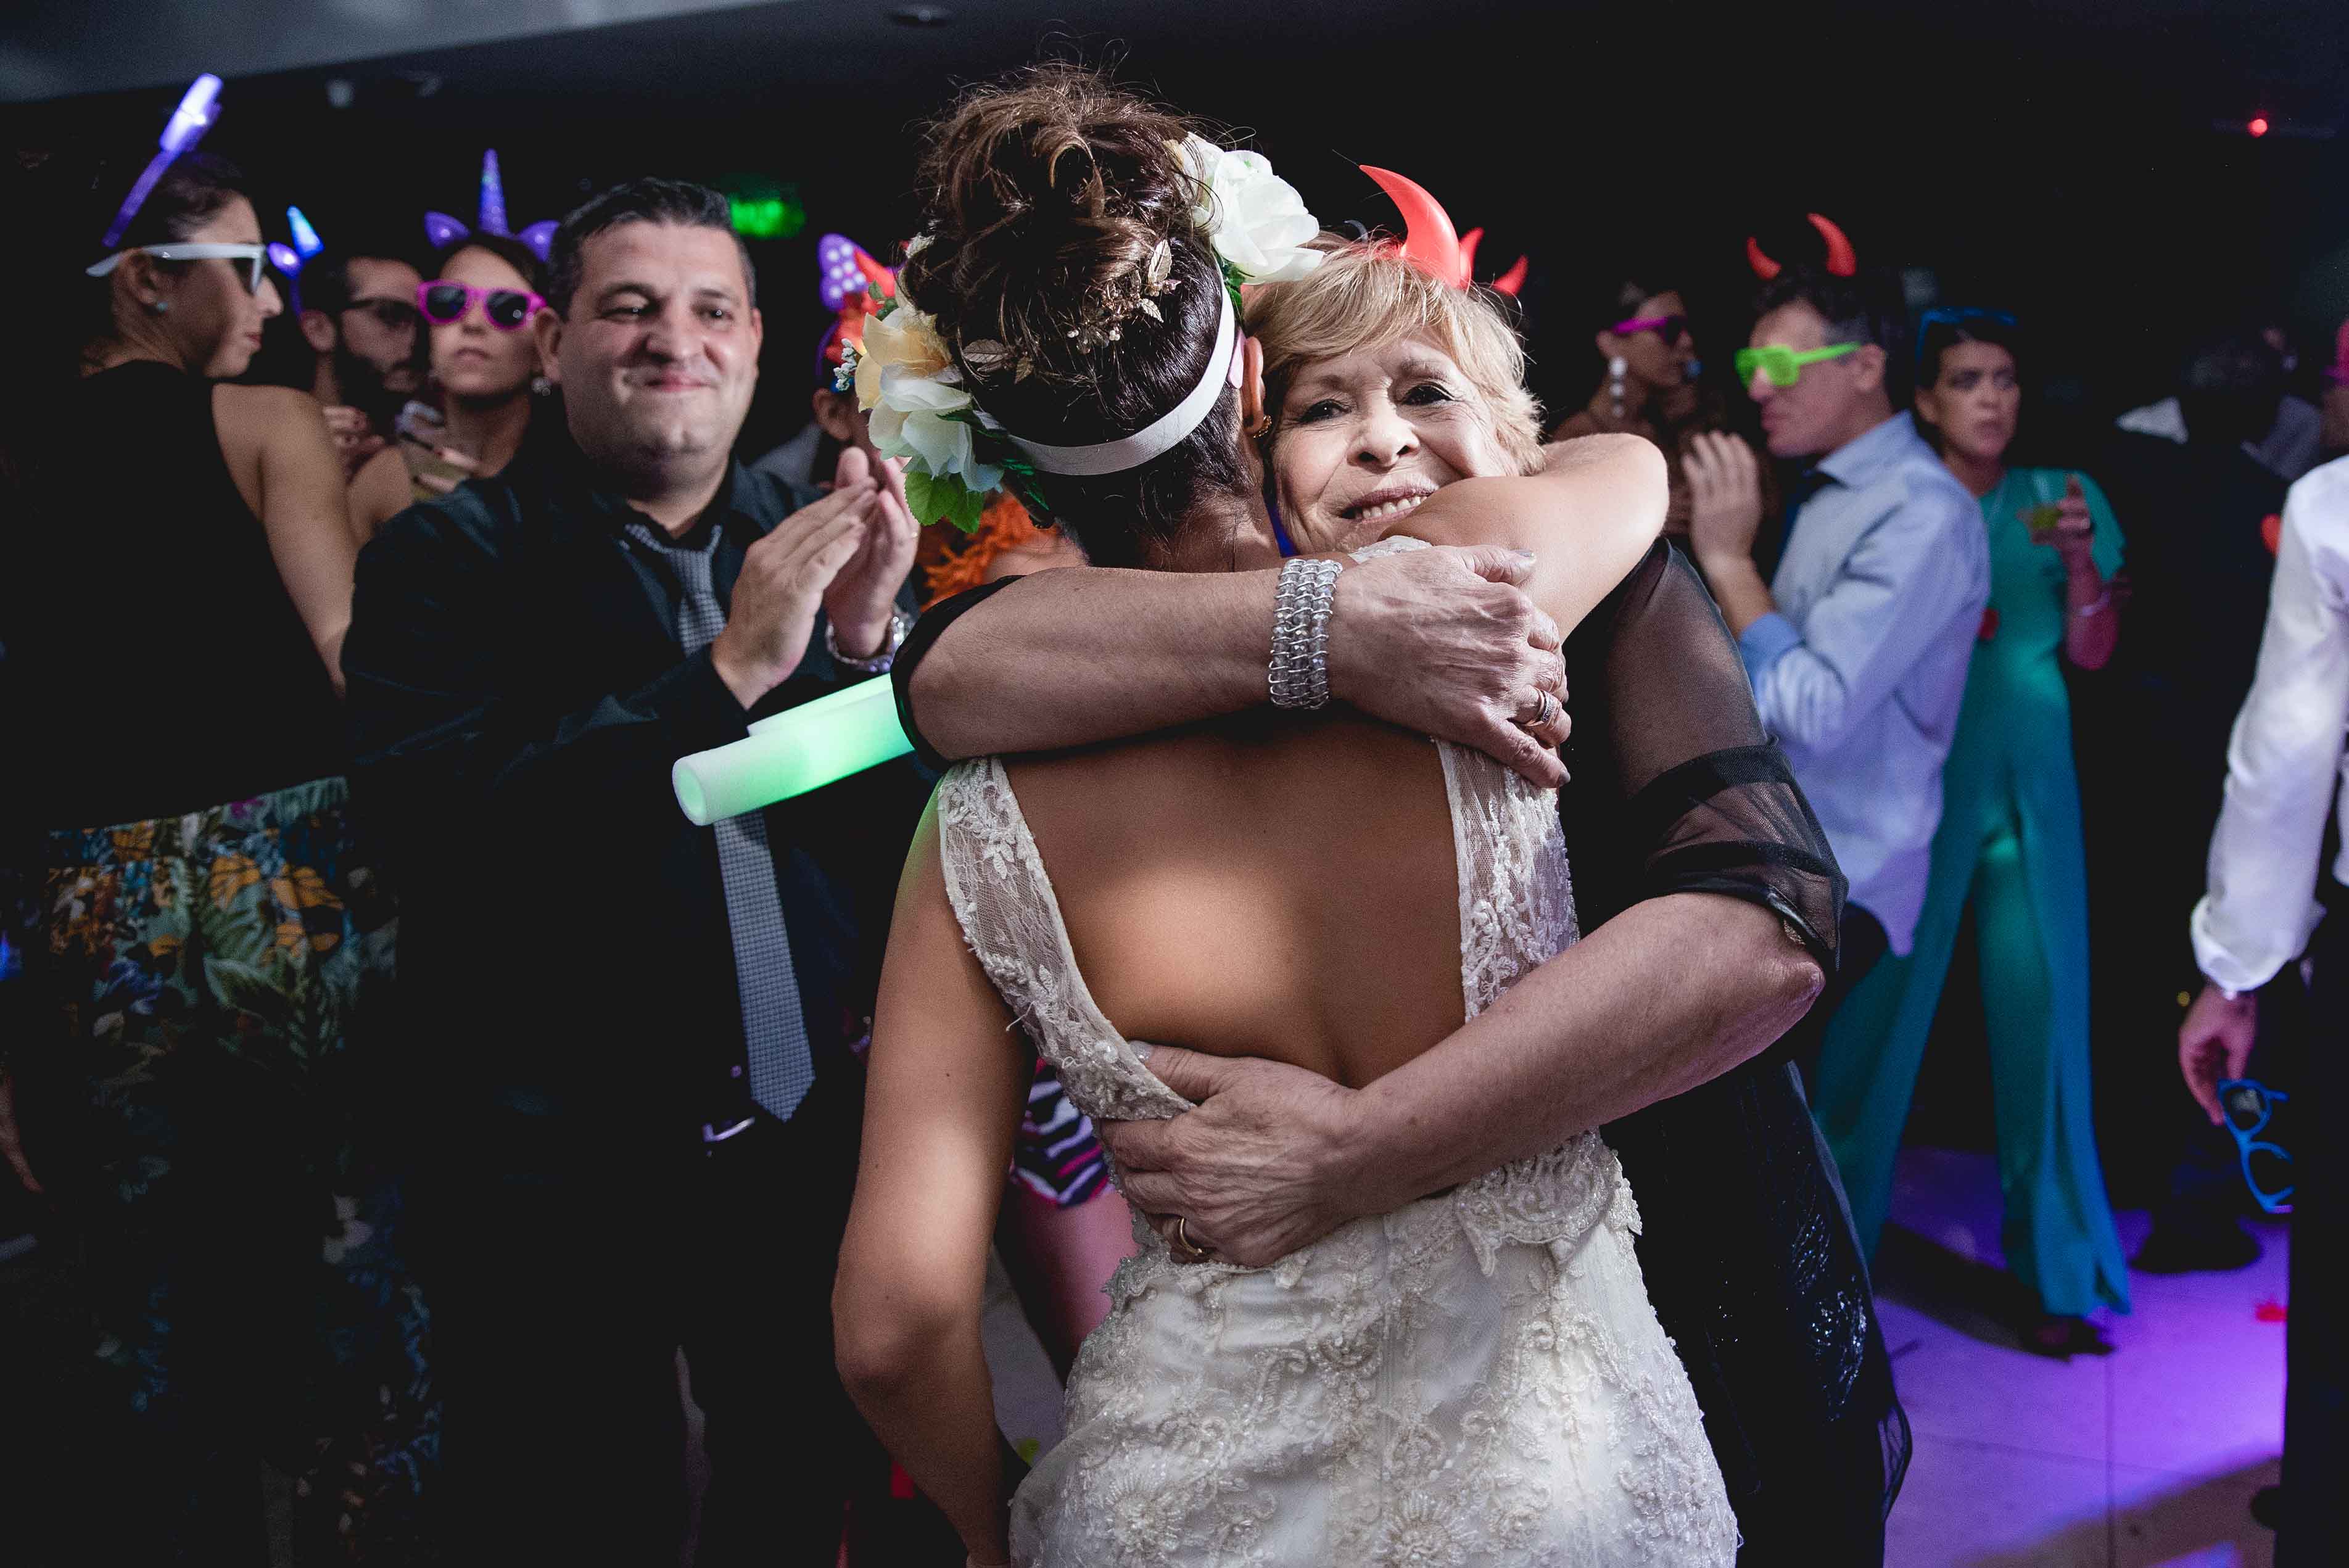 Fotos de la boda de Debi y Bruno en Rosario realizadas por Bucle Fotografias Flor Bosio y Caro Clerici